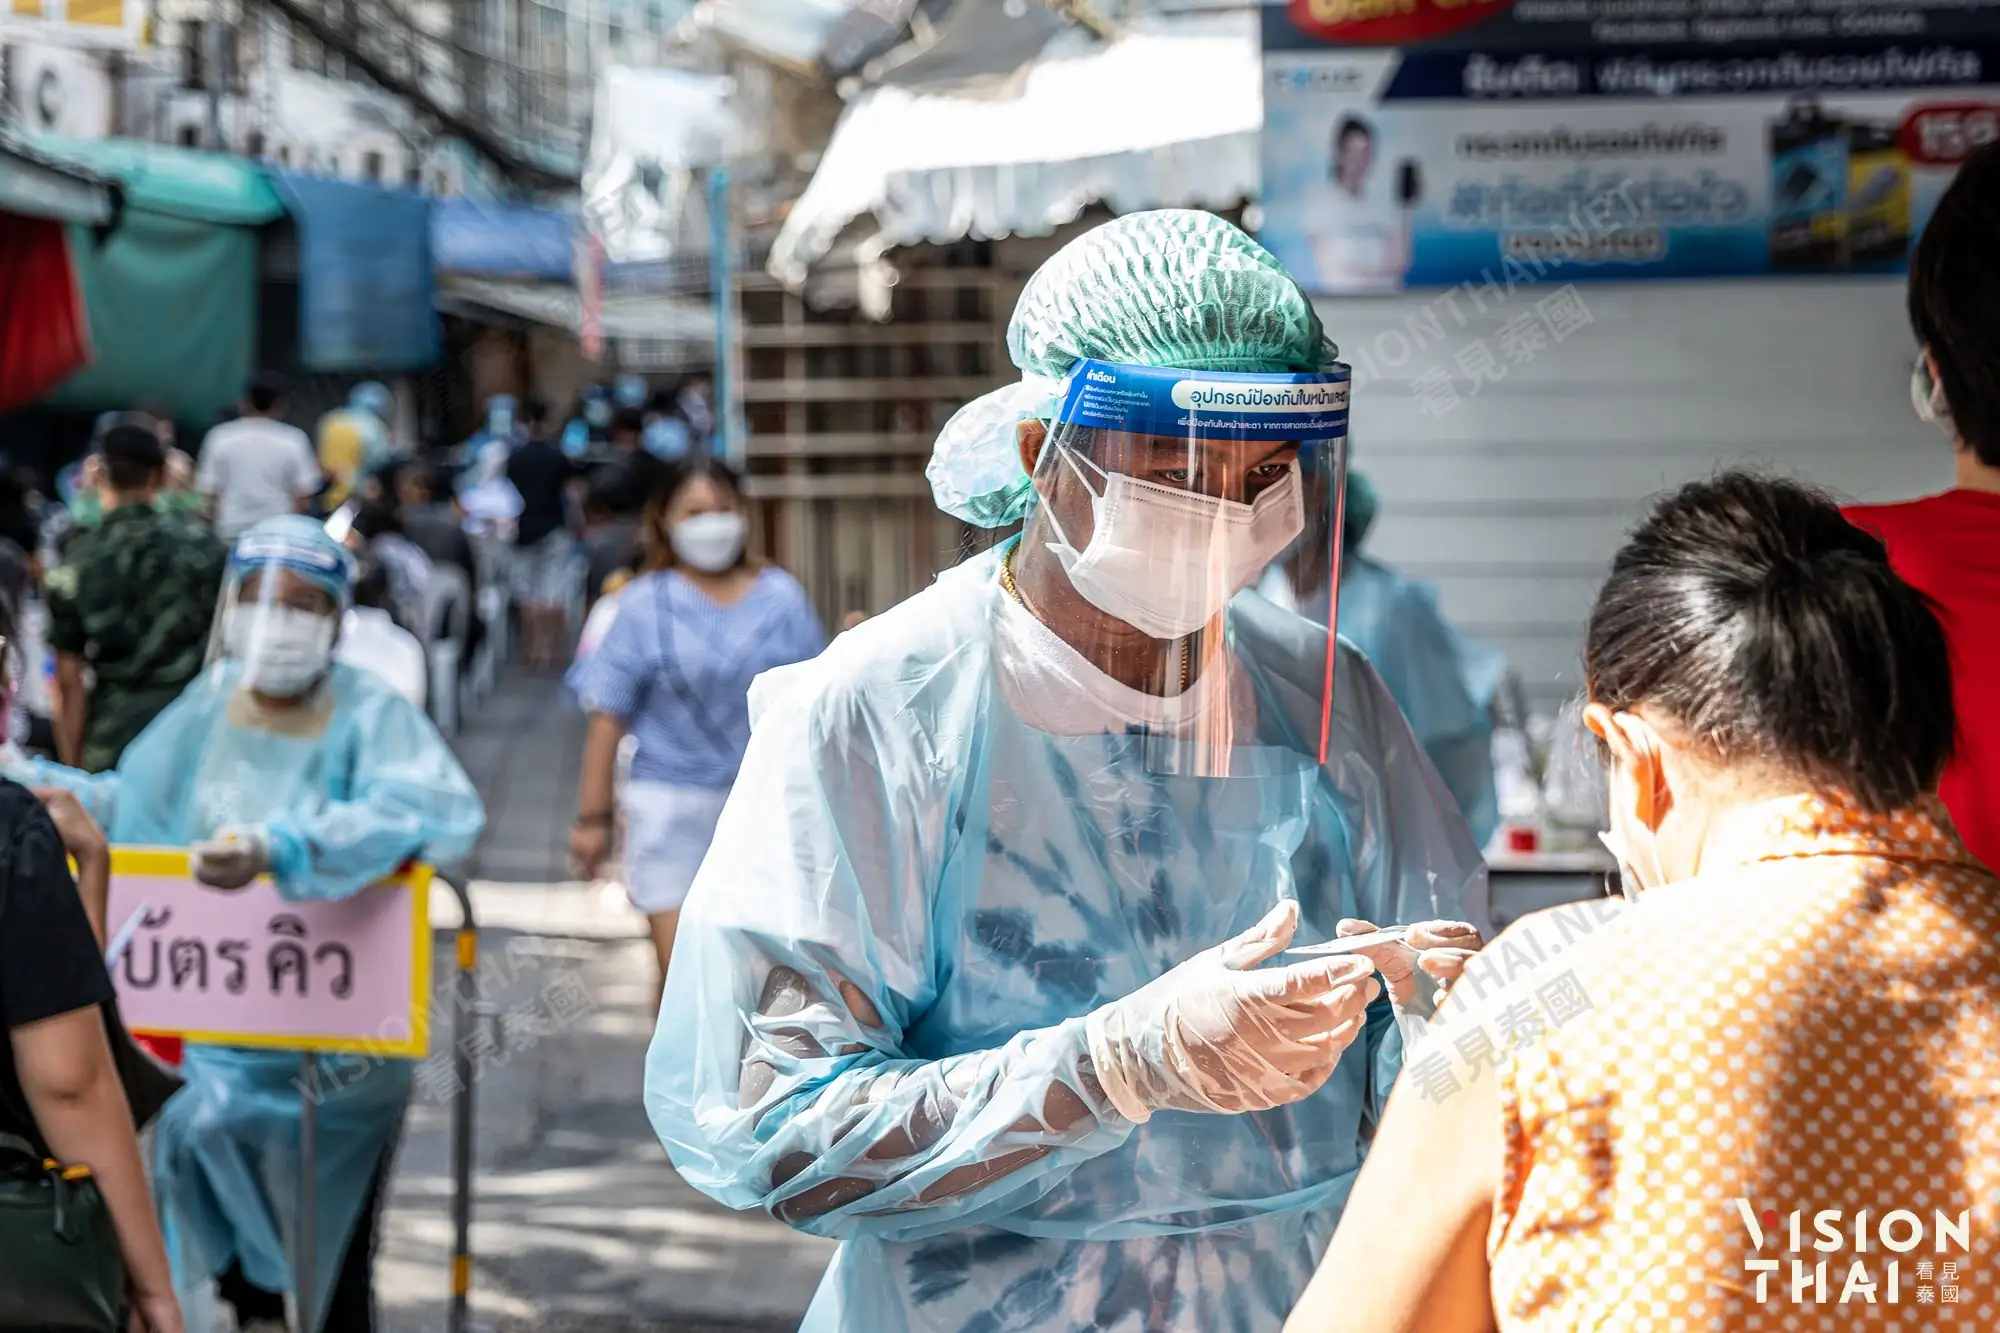 防堵Omicron 泰國推第三劑疫苗 今年接種1億劑將達標（VISION THAI 看見泰國）